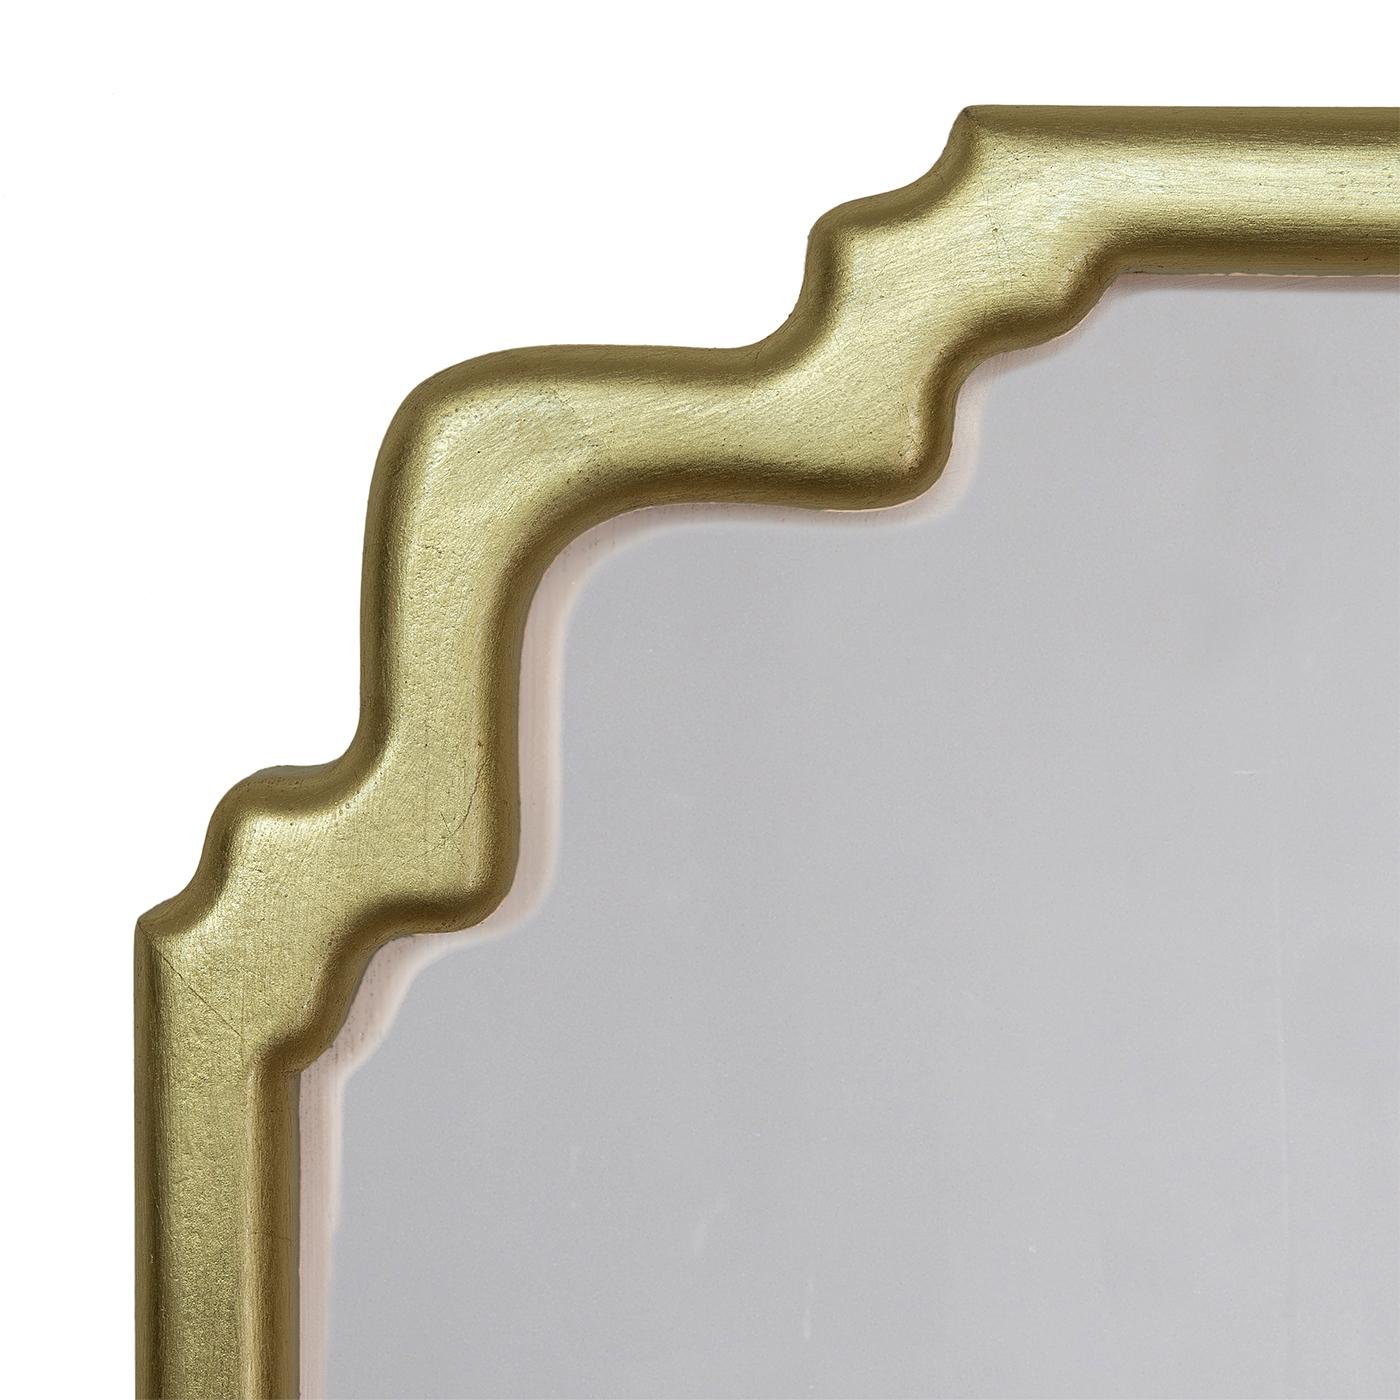 Elan Gold est un nouveau cadre de miroir en bois de style Art déco. La forme est simple et élégante et convient à n'importe quel espace, en particulier si elle est utilisée en paire. La finition à la feuille d'or est réalisée à la main dans le